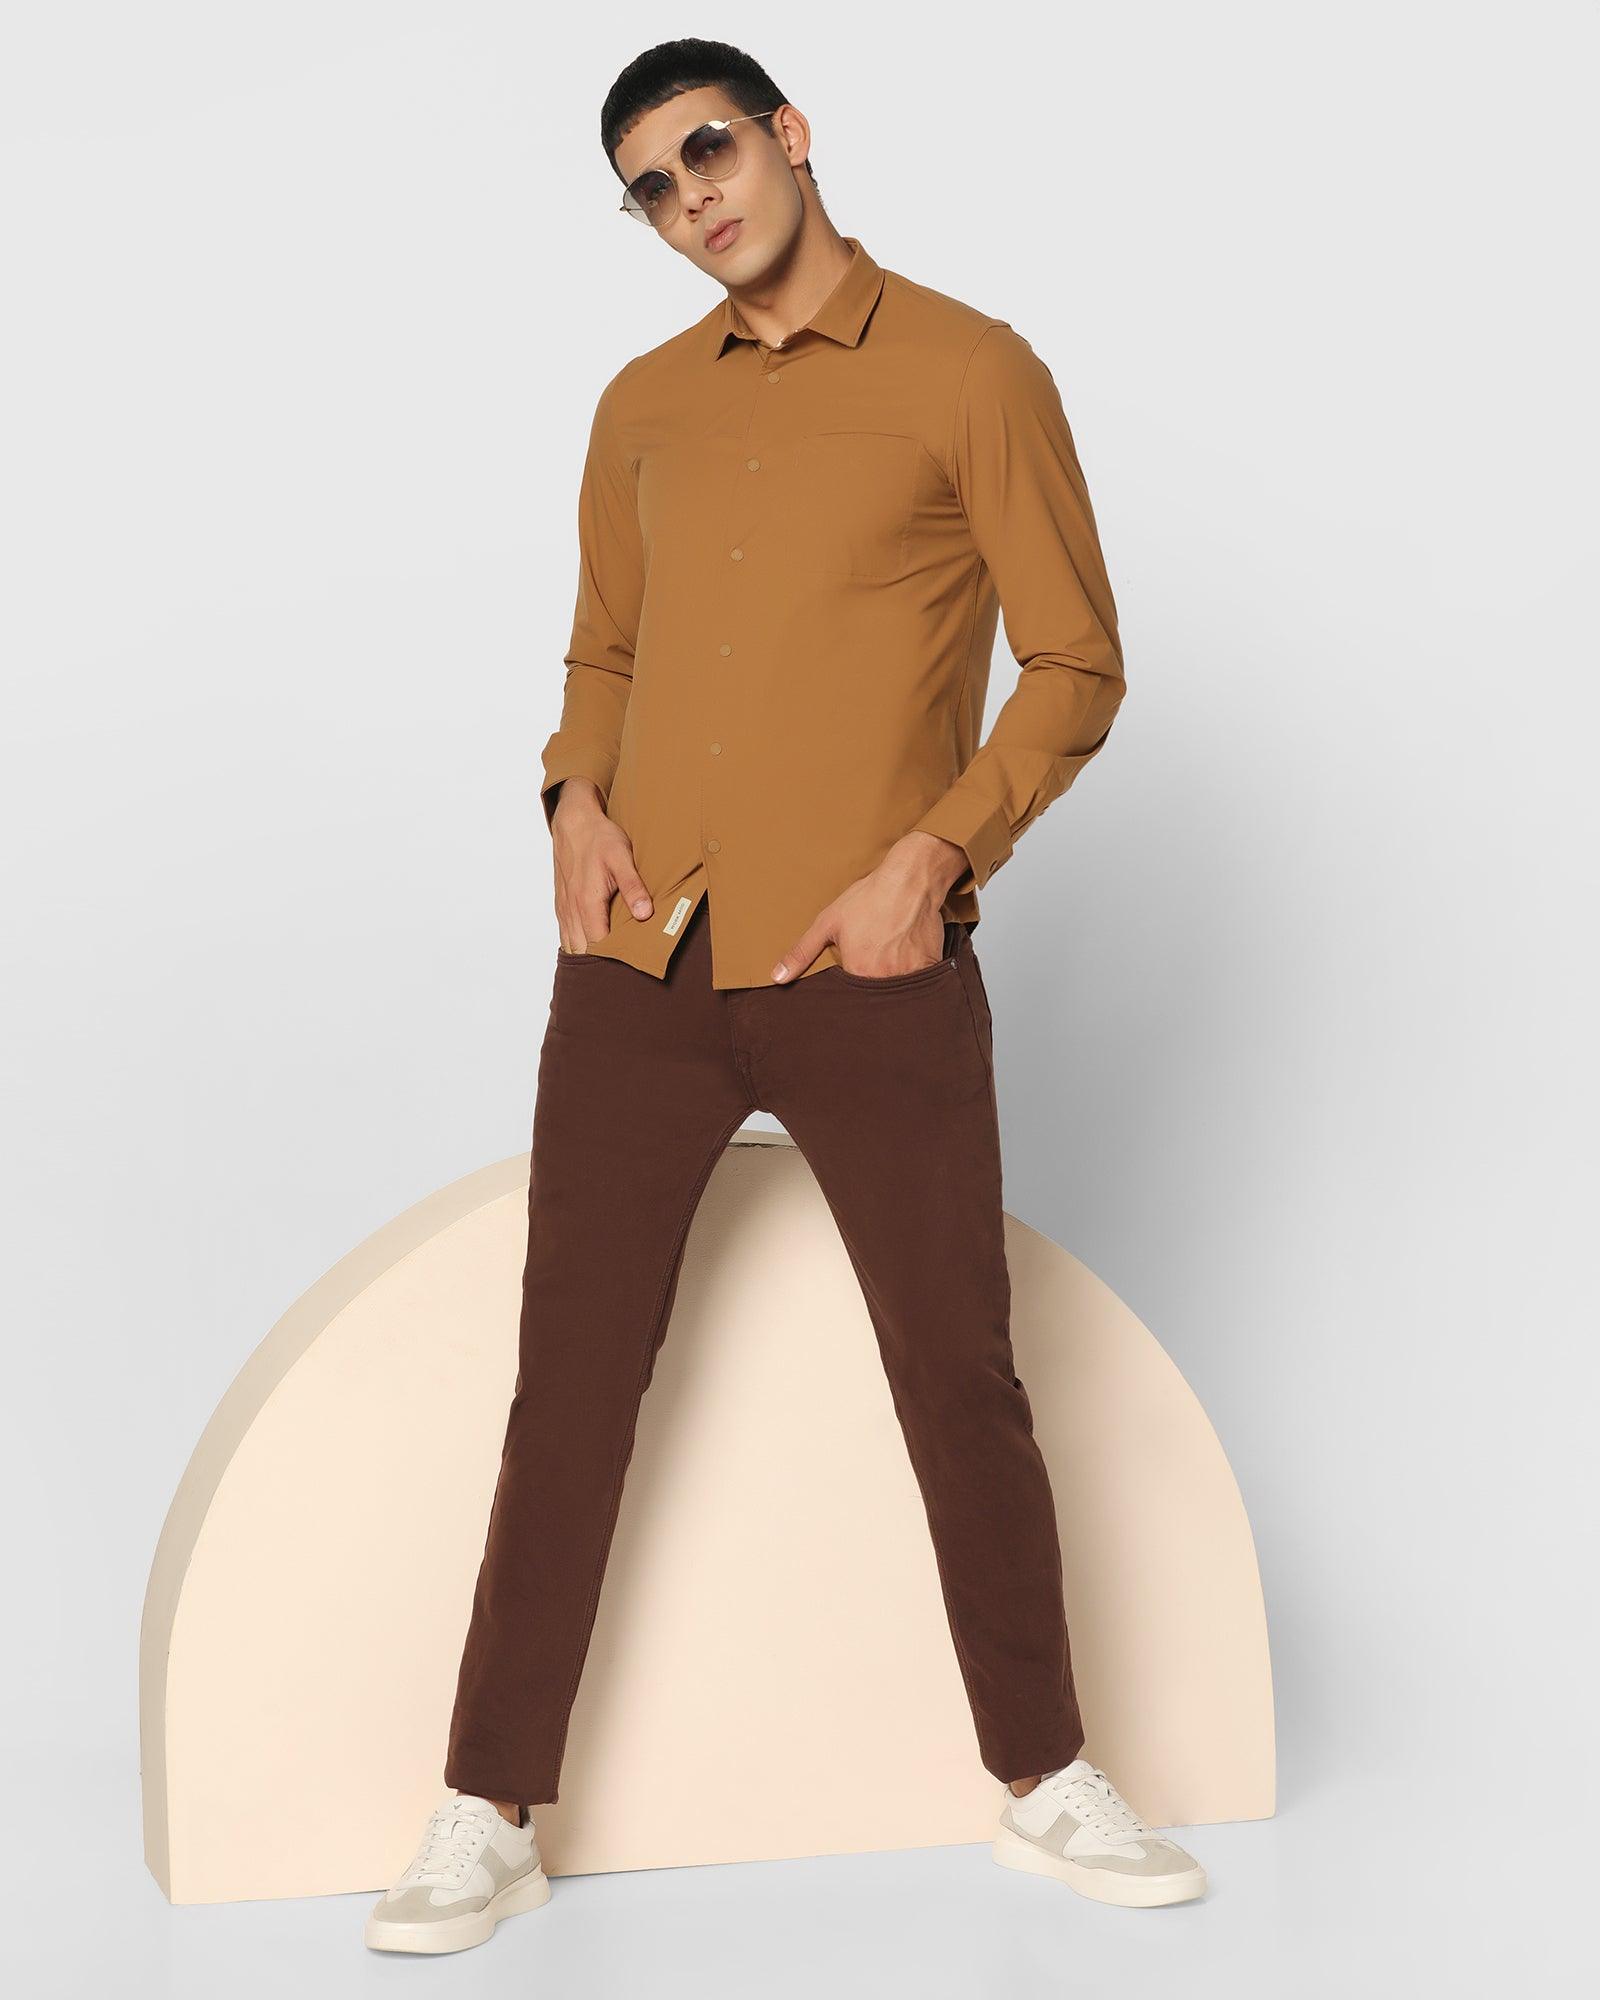 Eden Slim Fit Combination Khaki Suit | Khaki suit, Slim fit suit, Slim fit